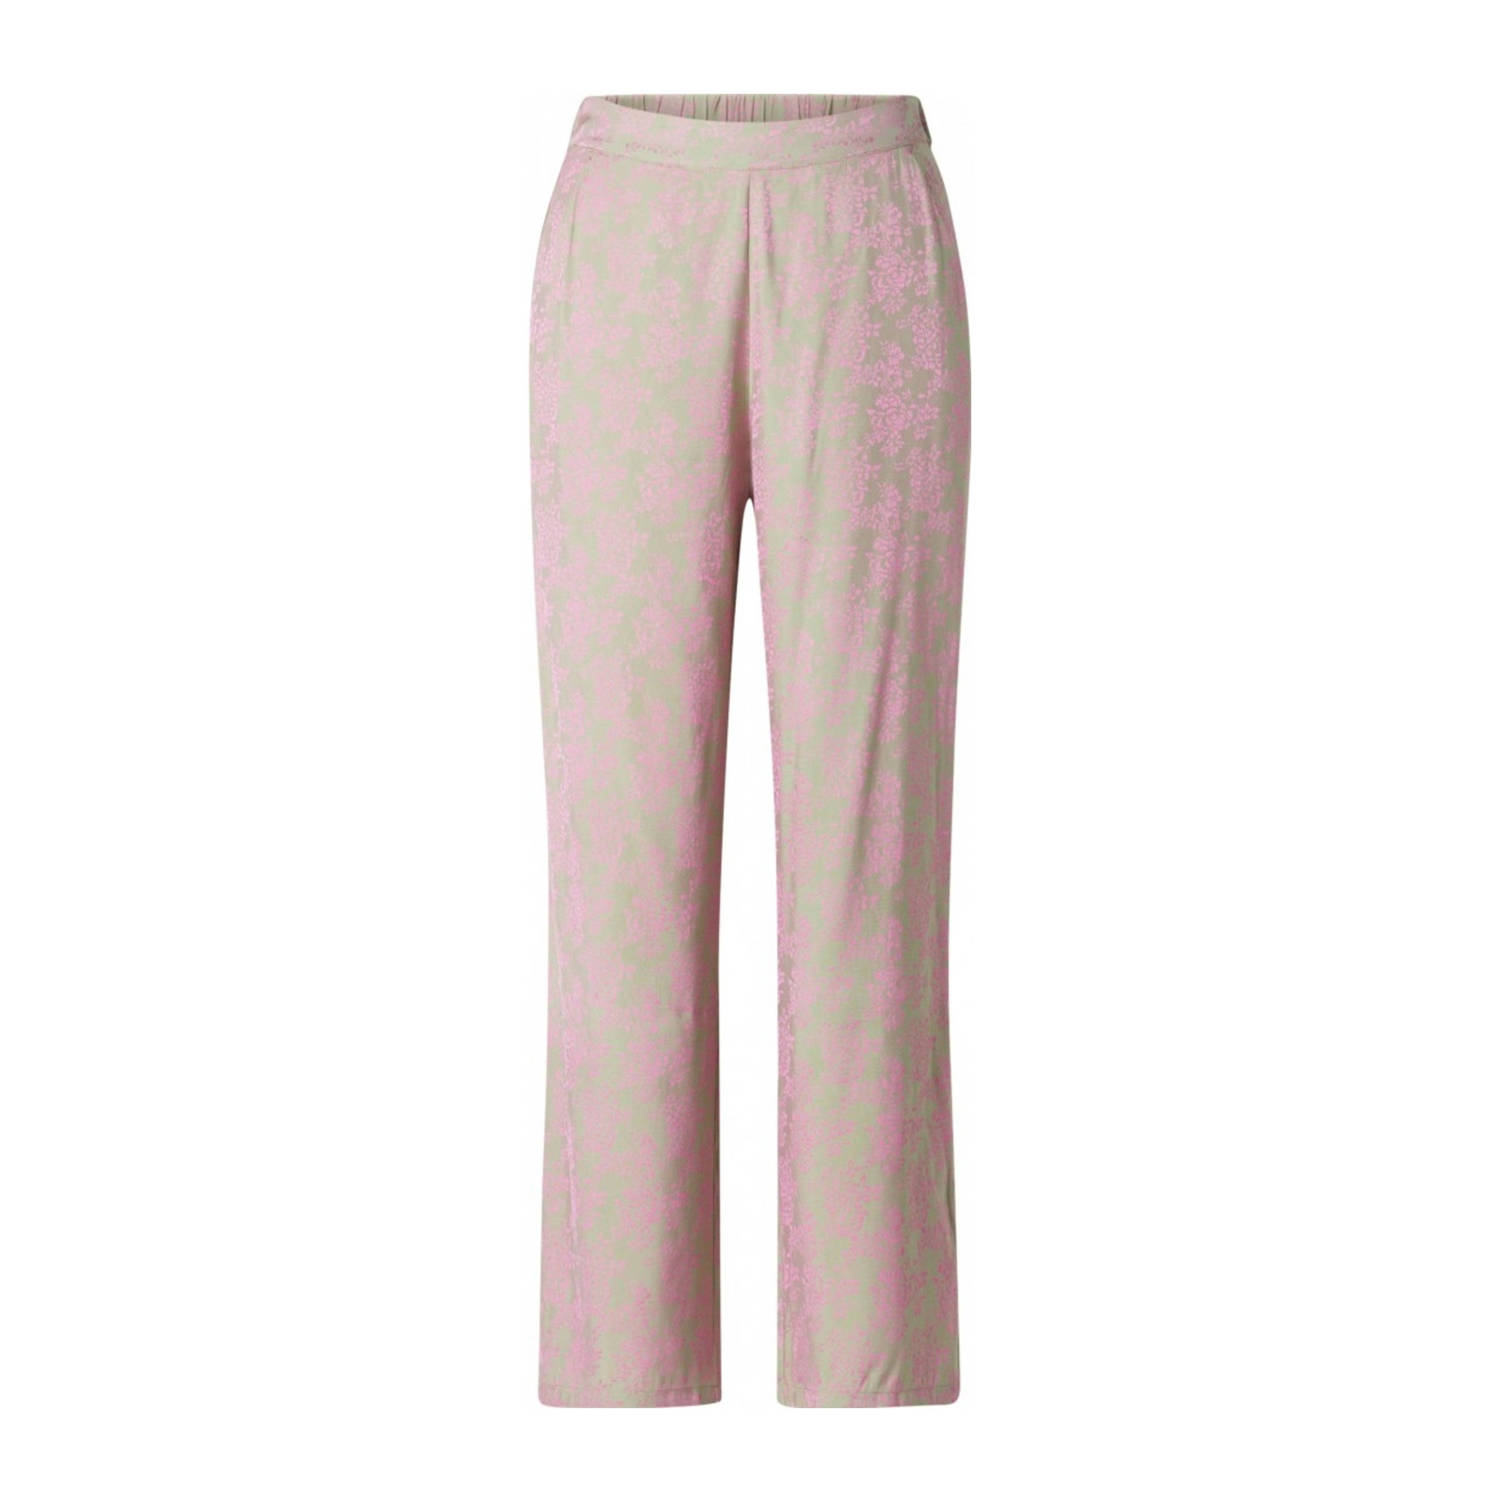 Ivy Beau gebloemde satijnen high waist wide leg pantalon Ceyla met jacquard groen roze